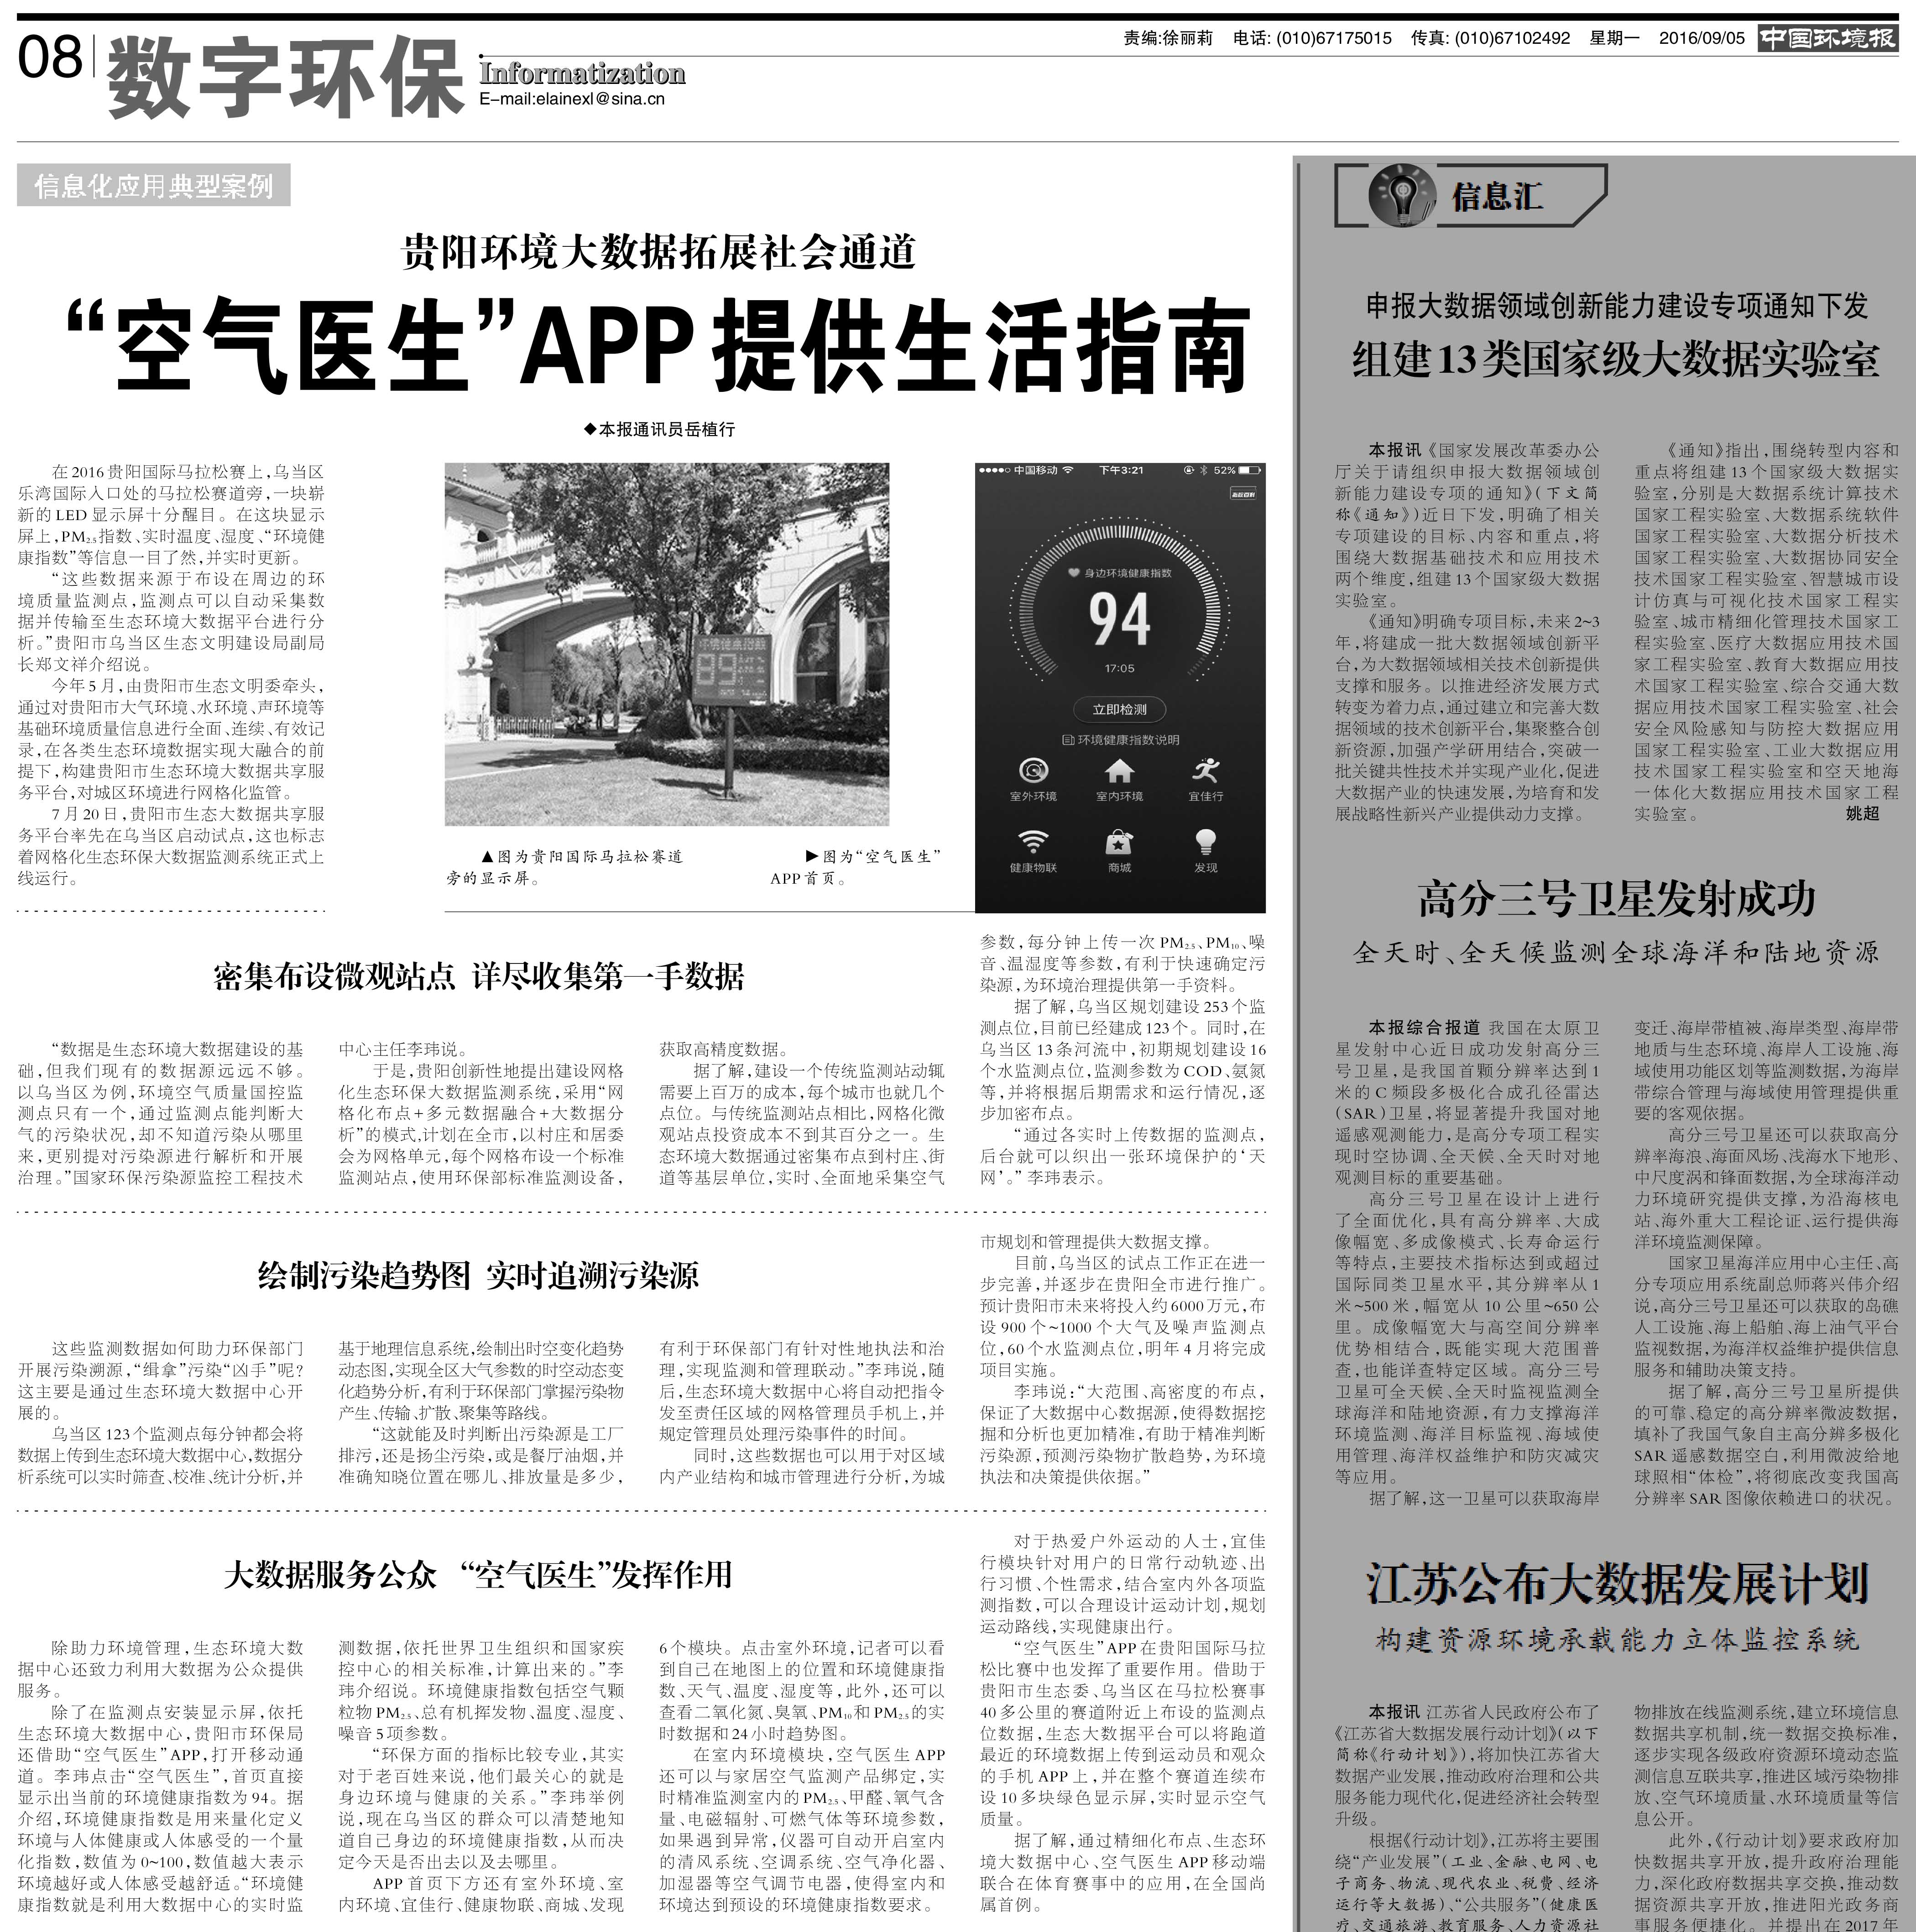 《中国环境报》报道：“空气医生”APP提供生活指南